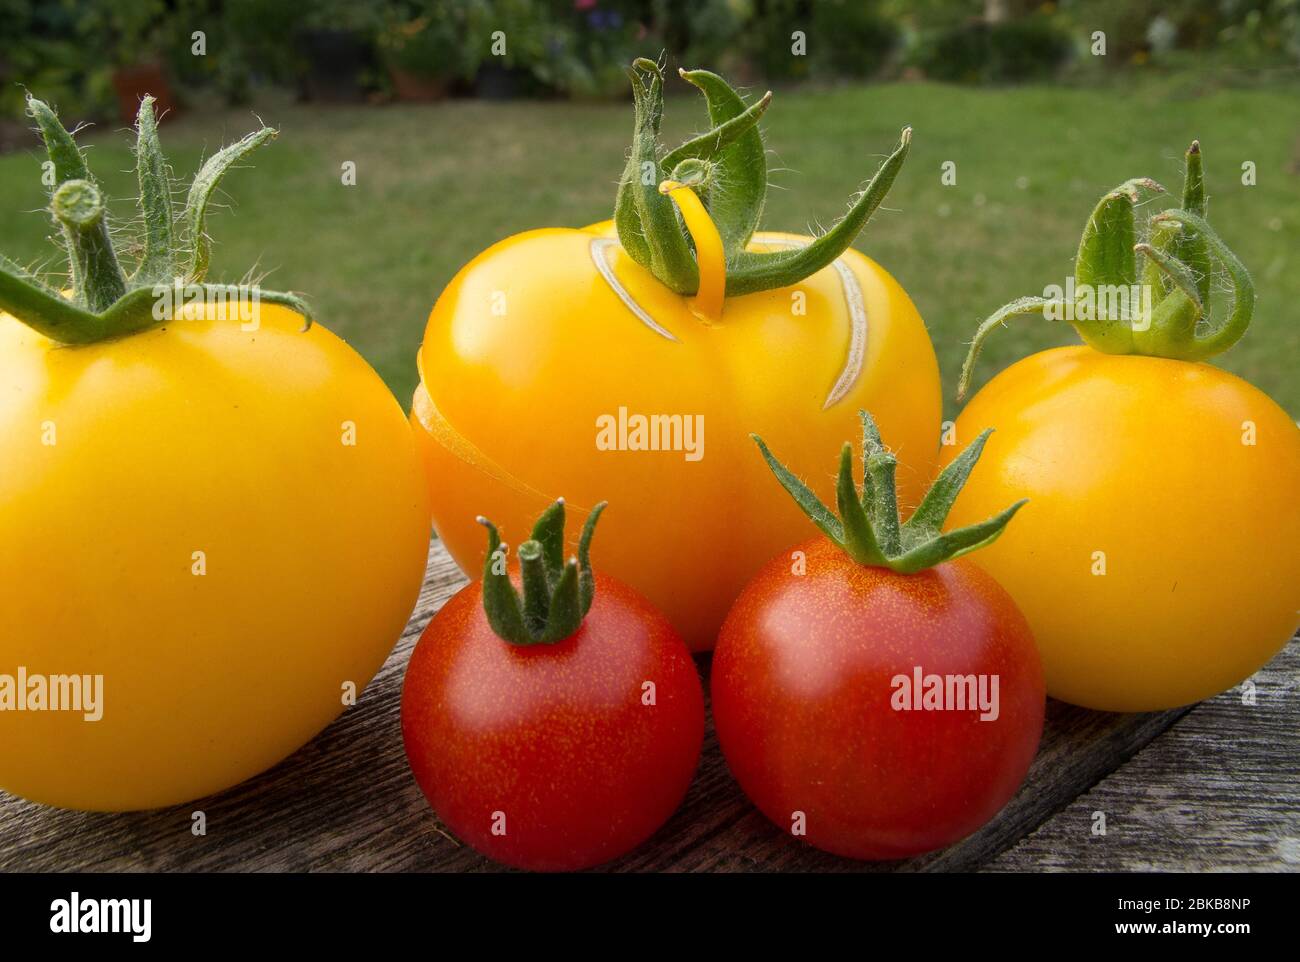 Groupe de cinq tomates (Lycopersicon esculentum), trois jaunes et deux rouges, sur une table de jardin Banque D'Images